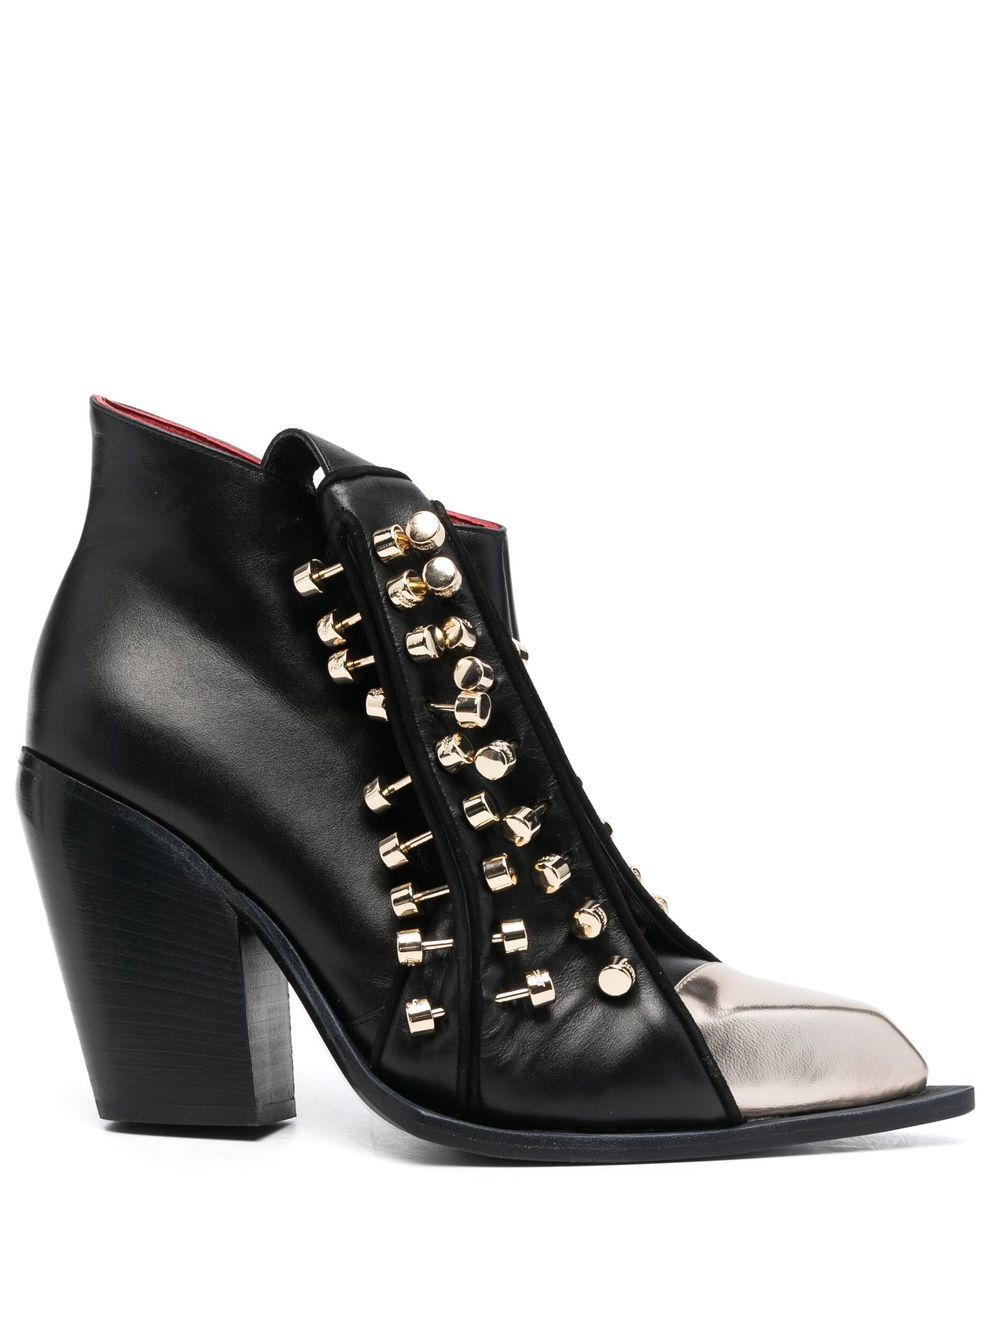 HARDOT stud-embellished ankle boots - Black von HARDOT